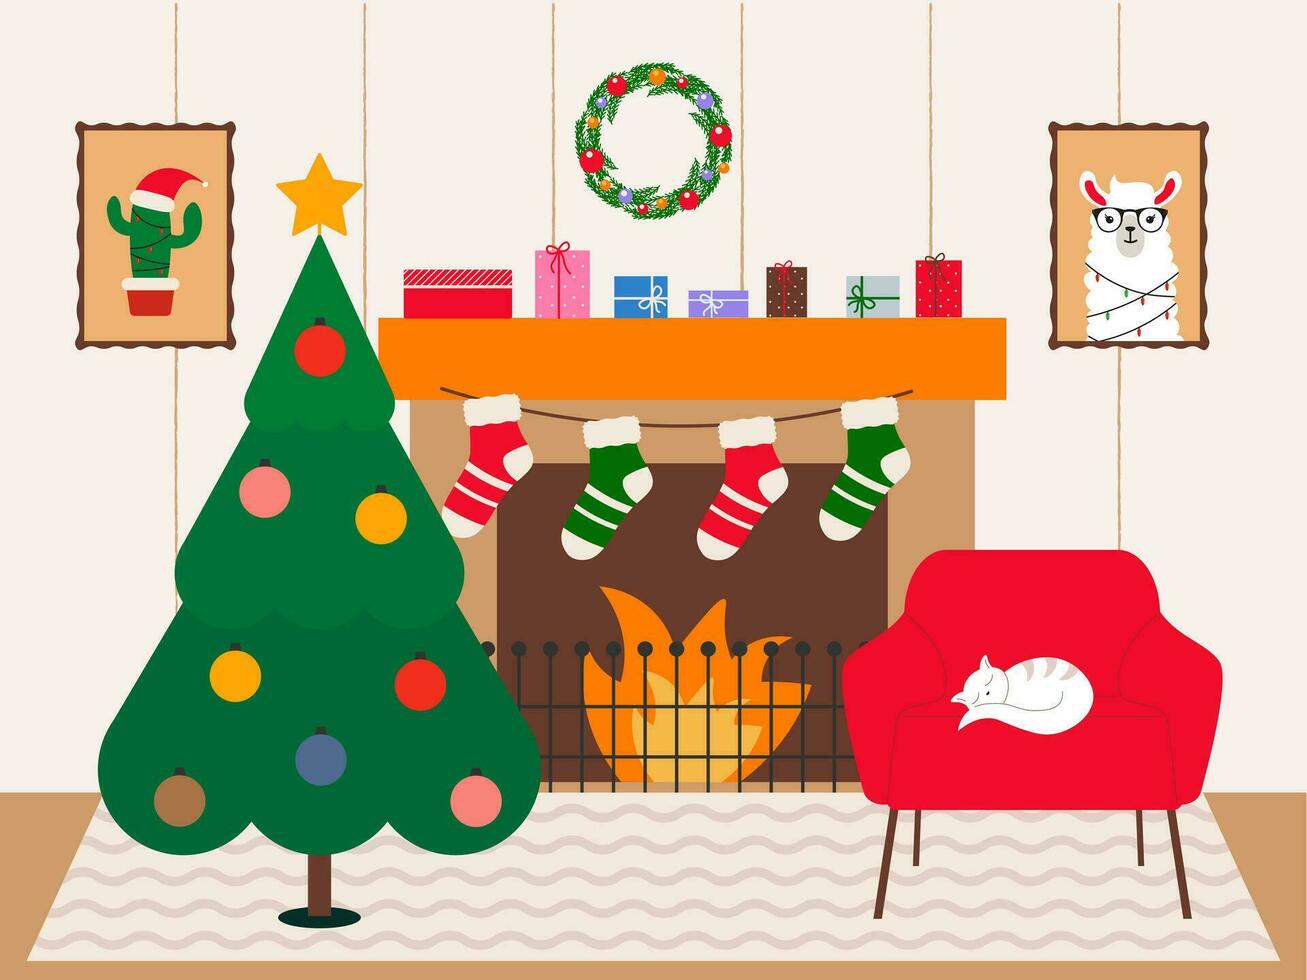 acogedor vivo habitación interior con chimenea, Navidad árbol y sillón. invierno diseño fiesta habitación. cómodamente dibujos animados vector escena